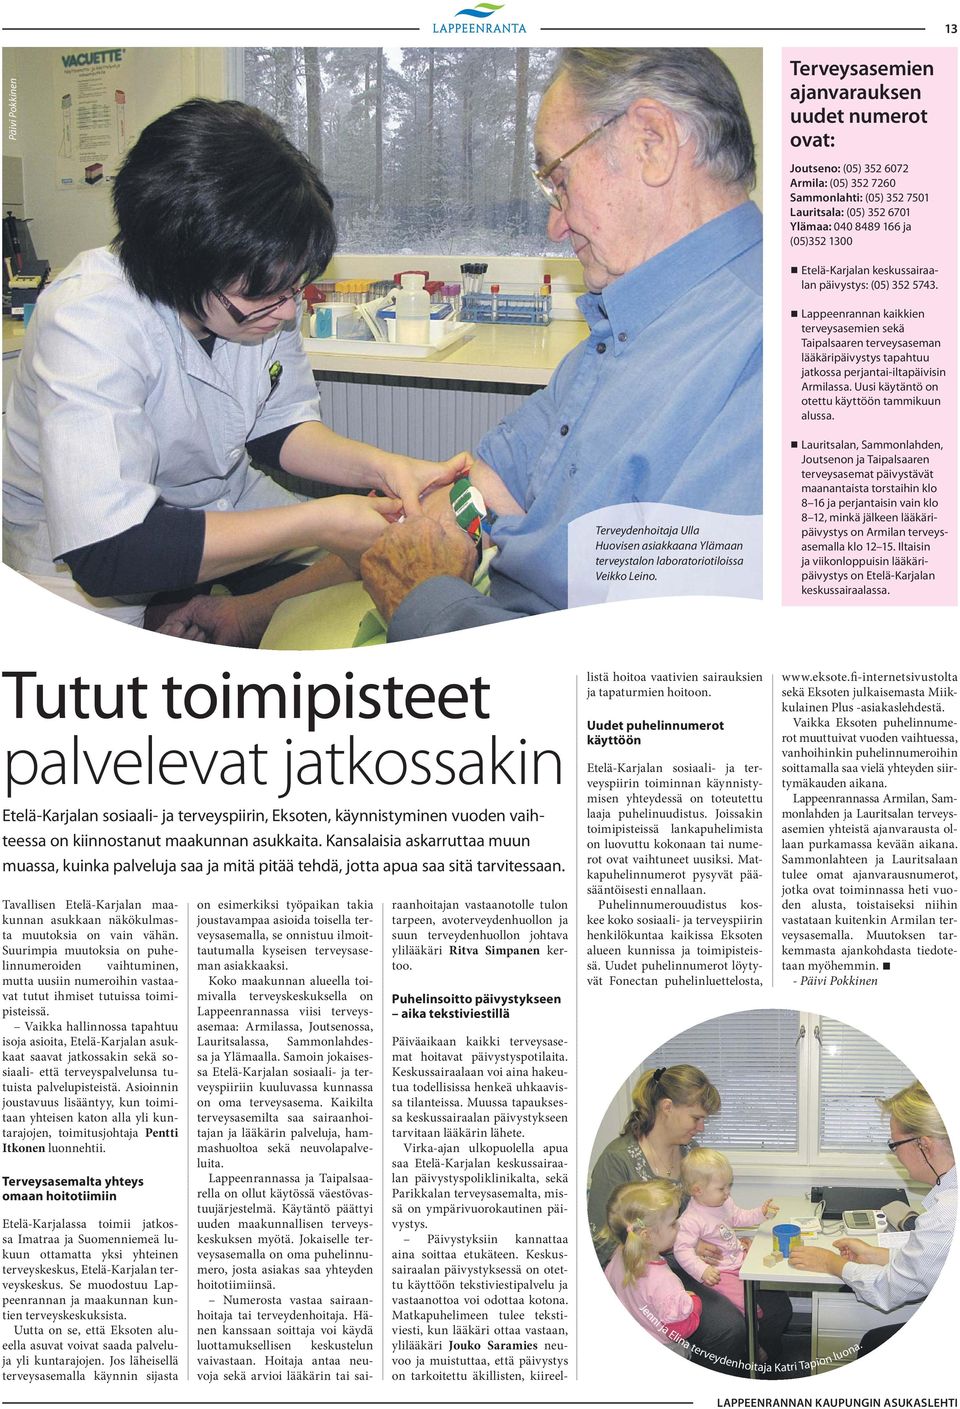 Uusi käytäntö on otettu käyttöön tammikuun alussa. Terveydenhoitaja Ulla Huovisen asiakkaana Ylämaan terveystalon laboratorio tiloissa Veikko Leino.